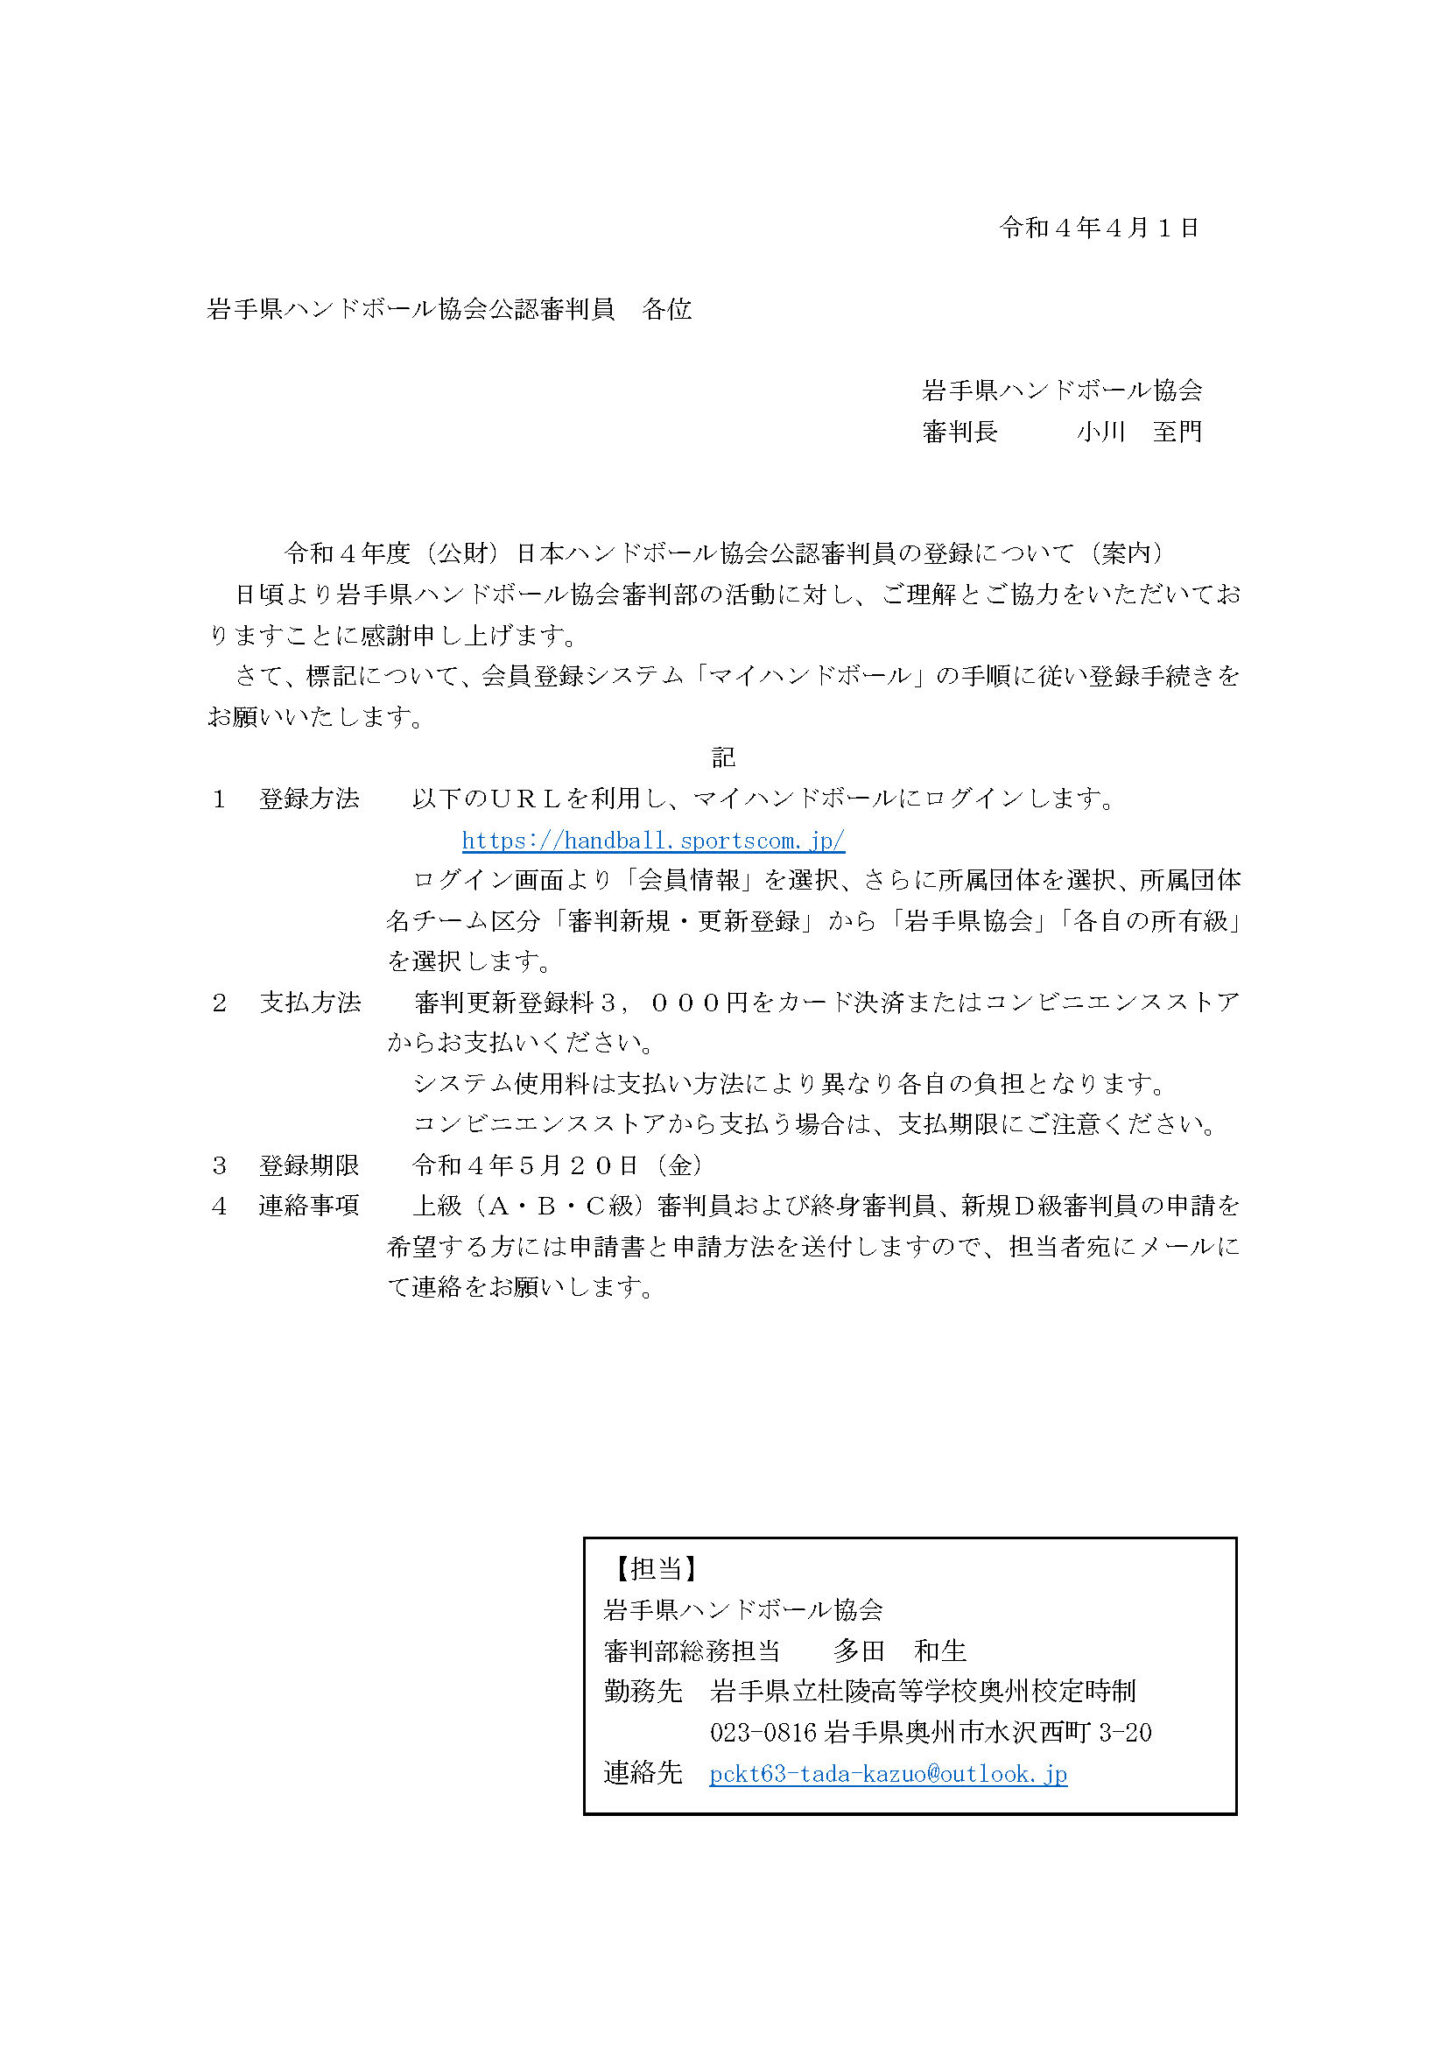 令和4年度(公財) 日本ハンドボール協会公認審判員の登録について(案内) | 岩手県ハンドボール協会